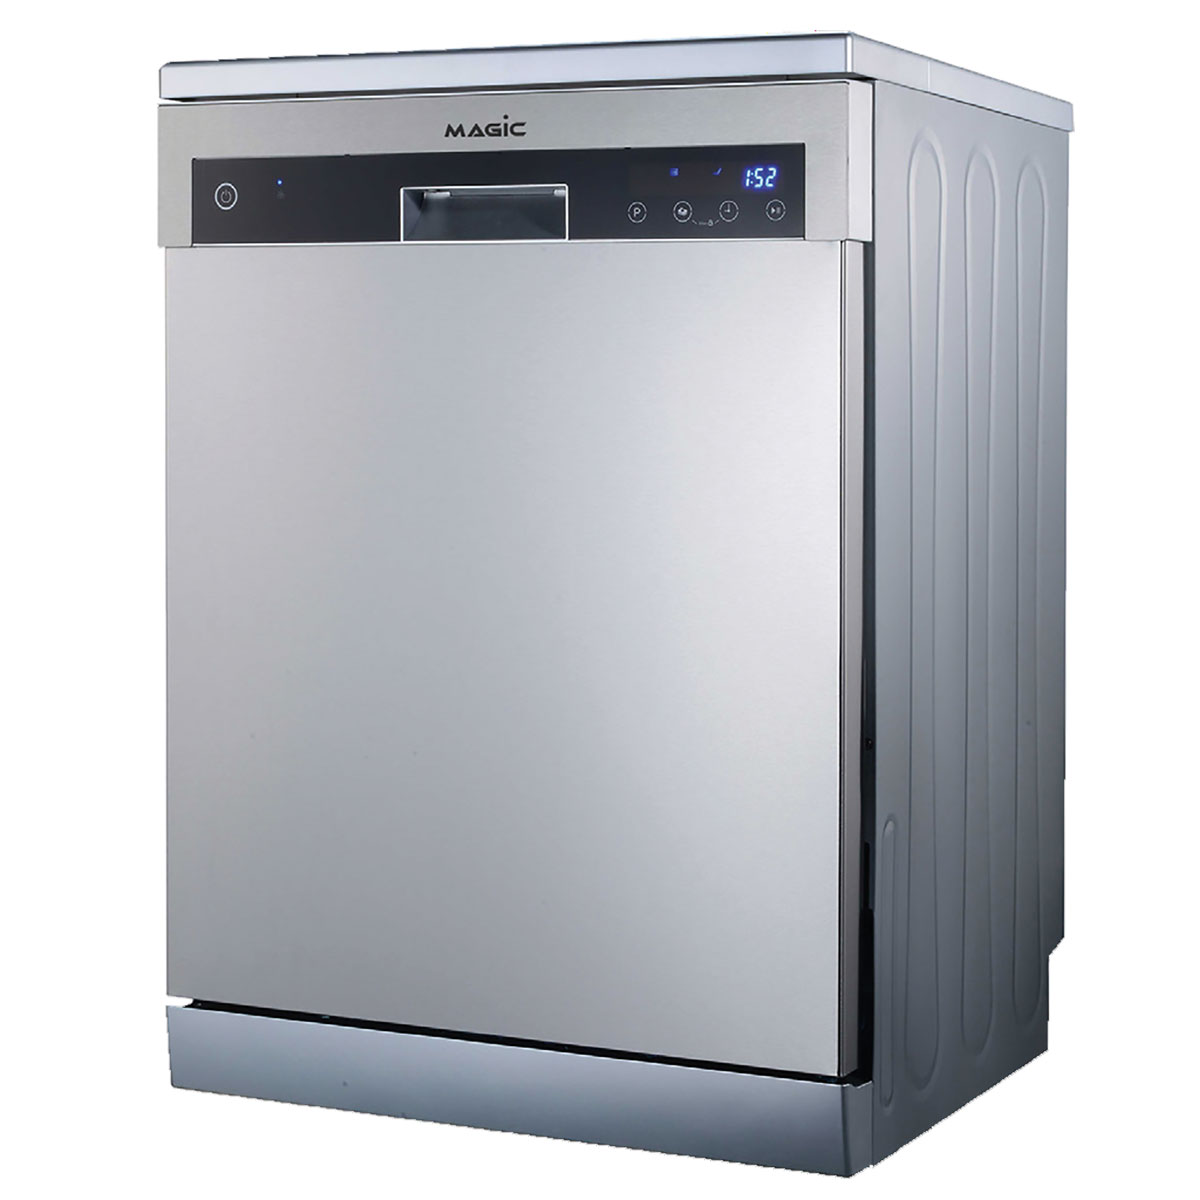 ماشین ظرفشویی مجیک مدل DW52M03